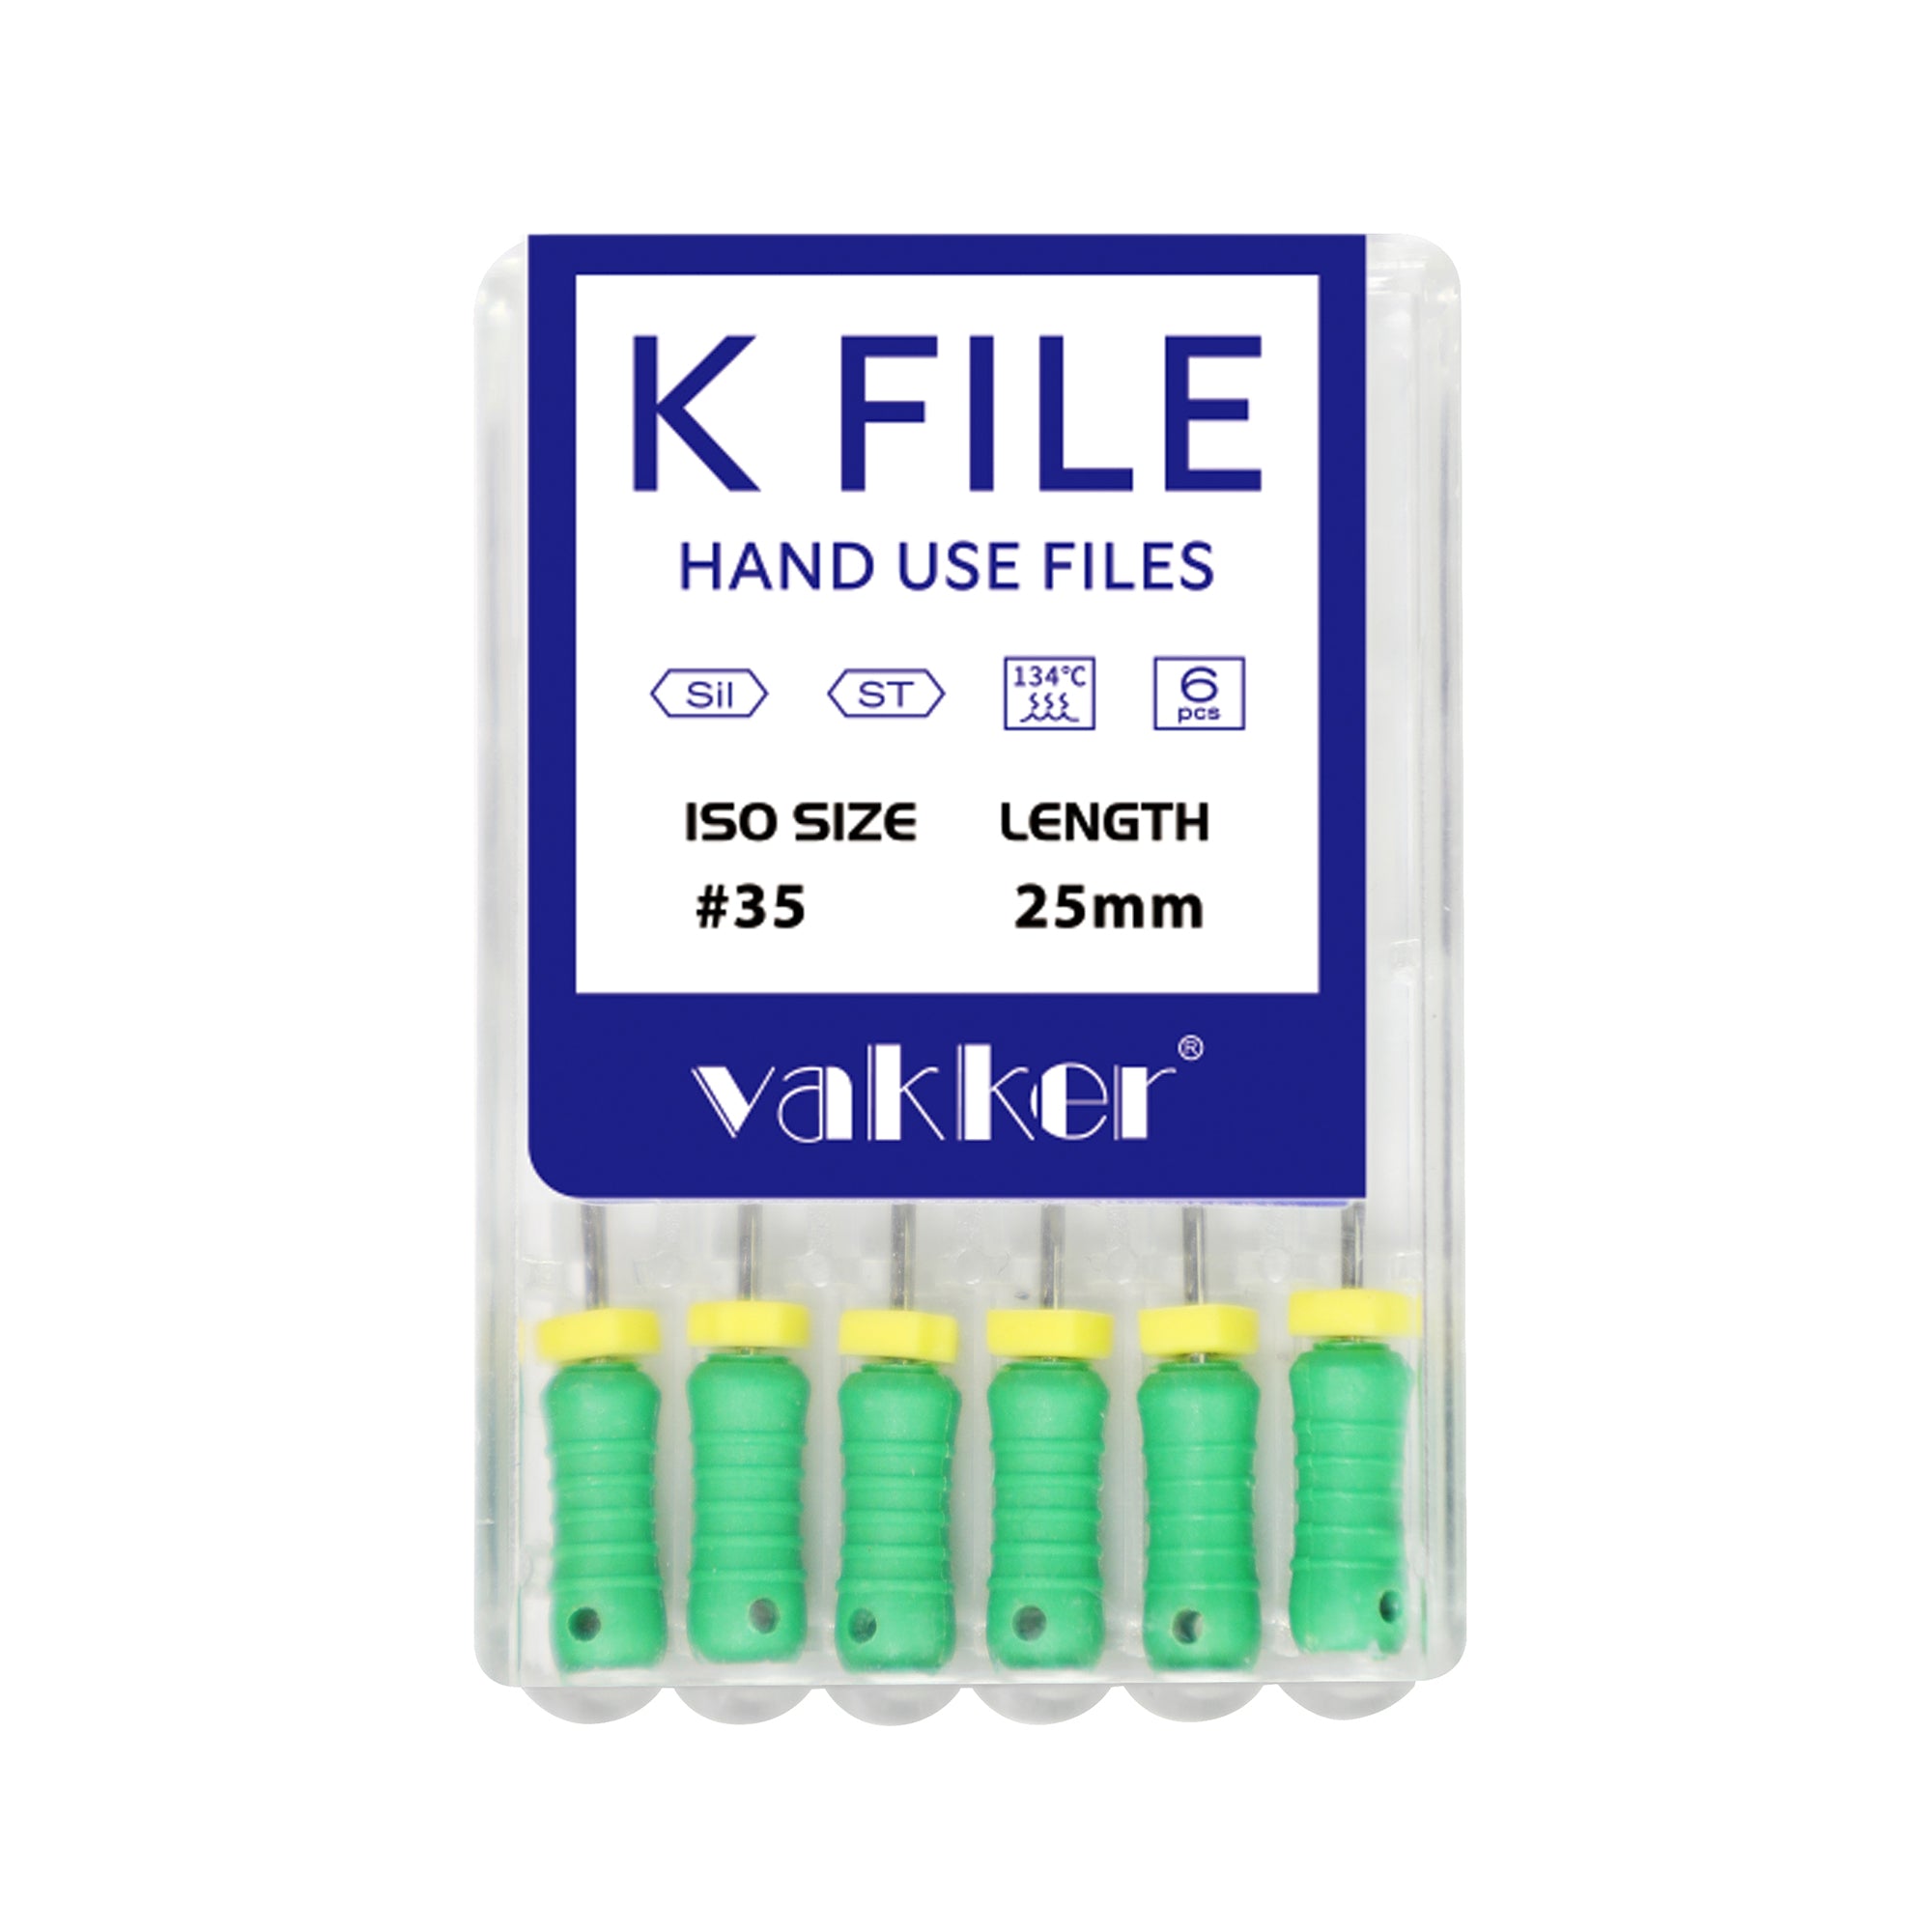 EKK515 : KFlex Files 25mm Size 15 White